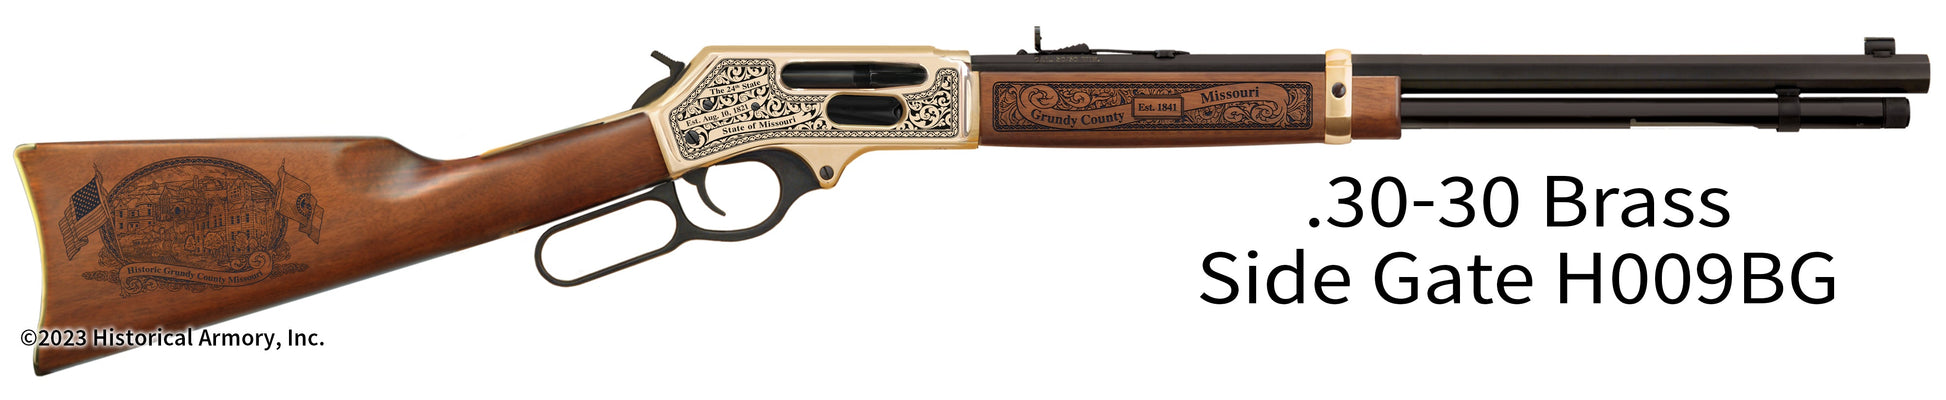 Grundy County Missouri Engraved Henry .30-30 Brass Side Gate Rifle